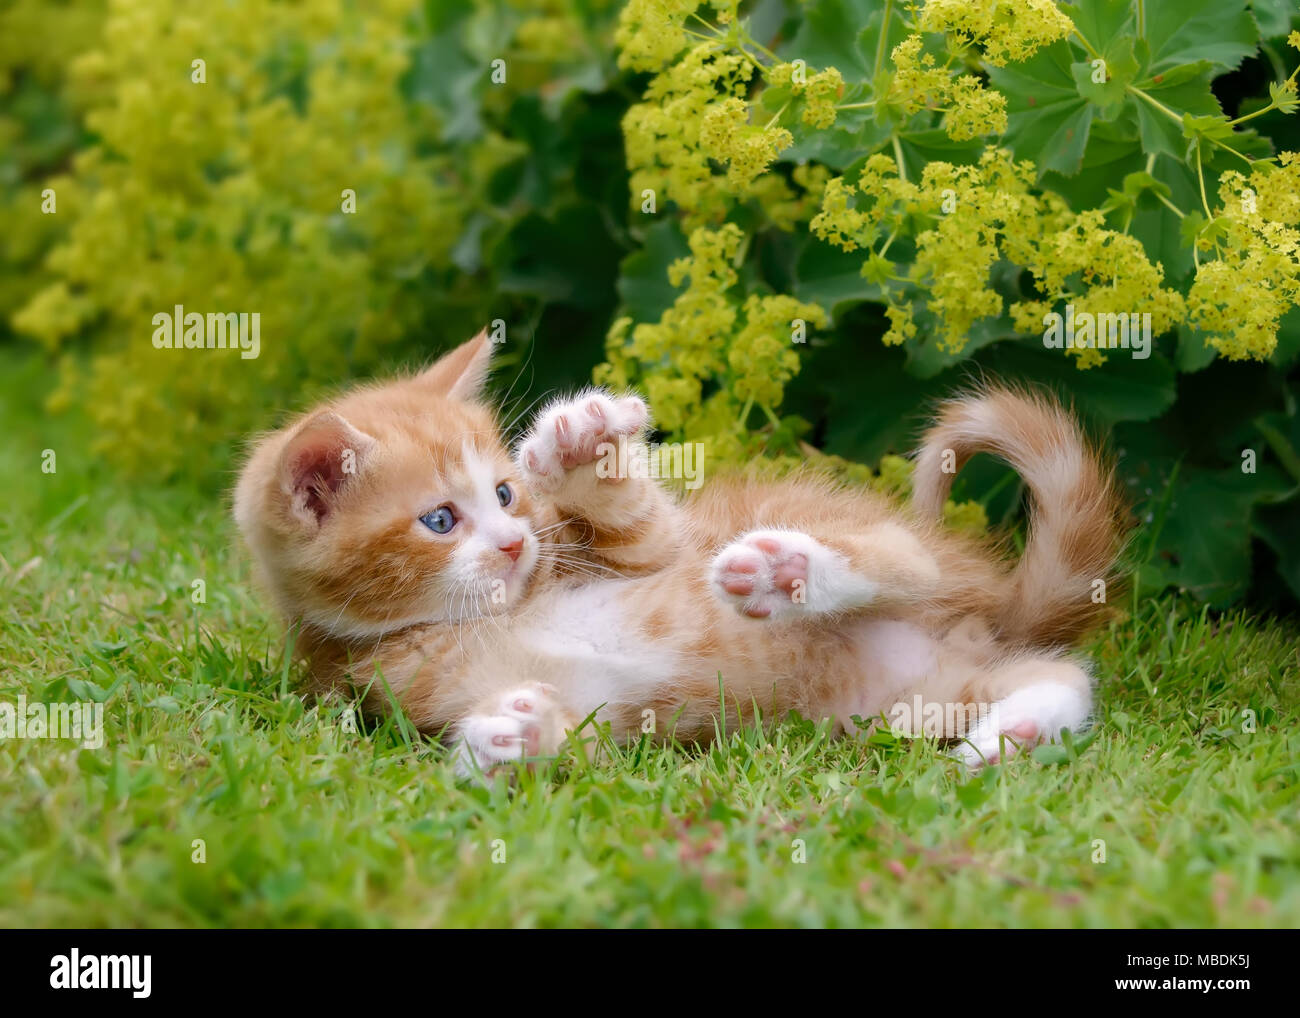 Carino Rosso tabby e bianco baby gattino giocando e mostrando i suoi artigli fuori in erba verde in un giardino fiorito Foto Stock